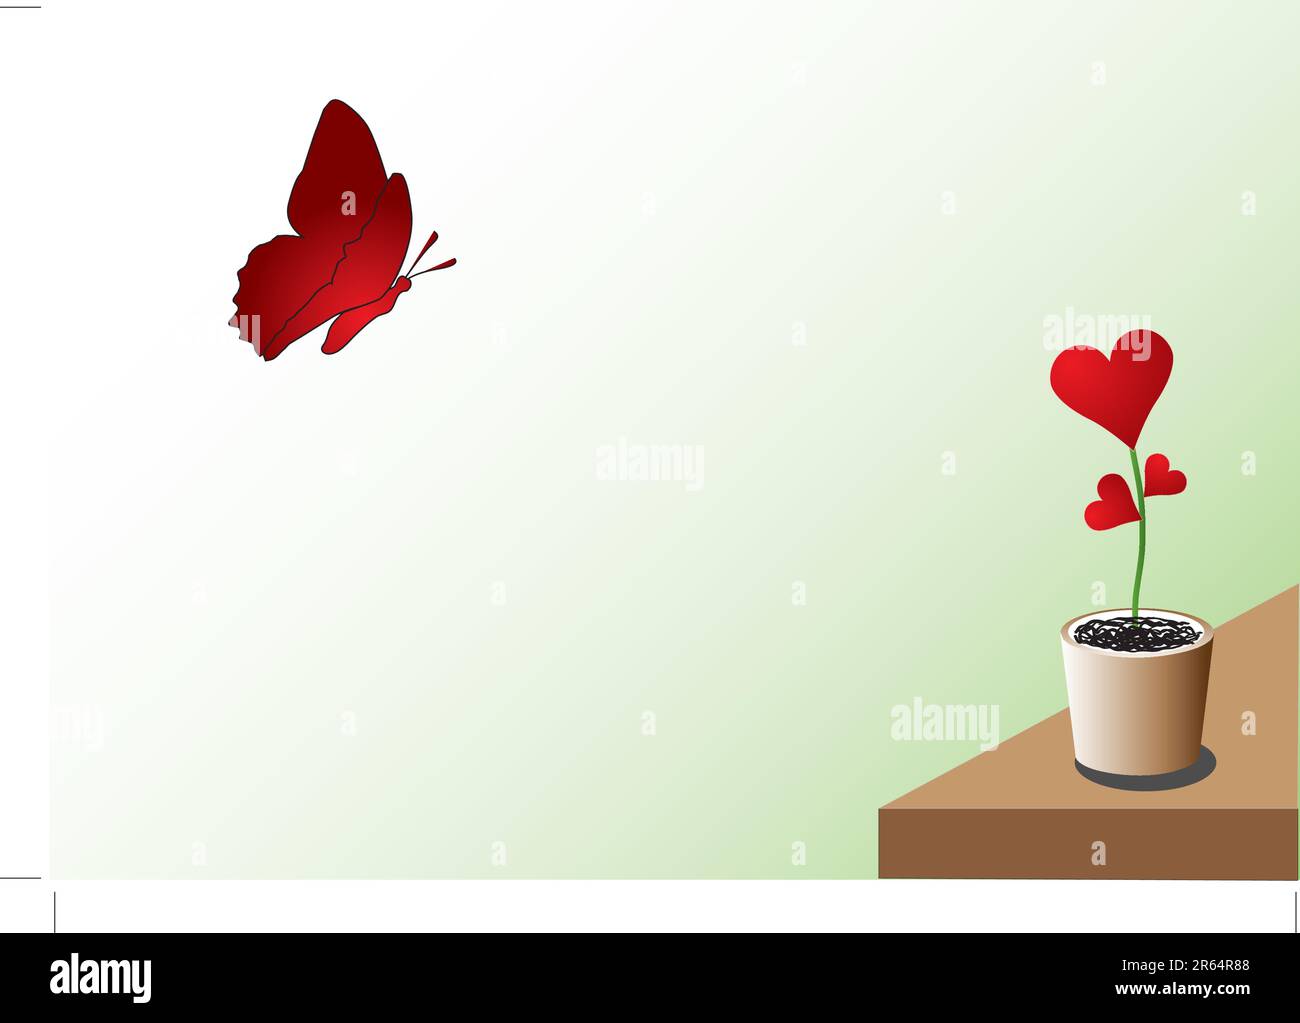 Papillon et coeur sur un bsckground vert clair Illustration de Vecteur